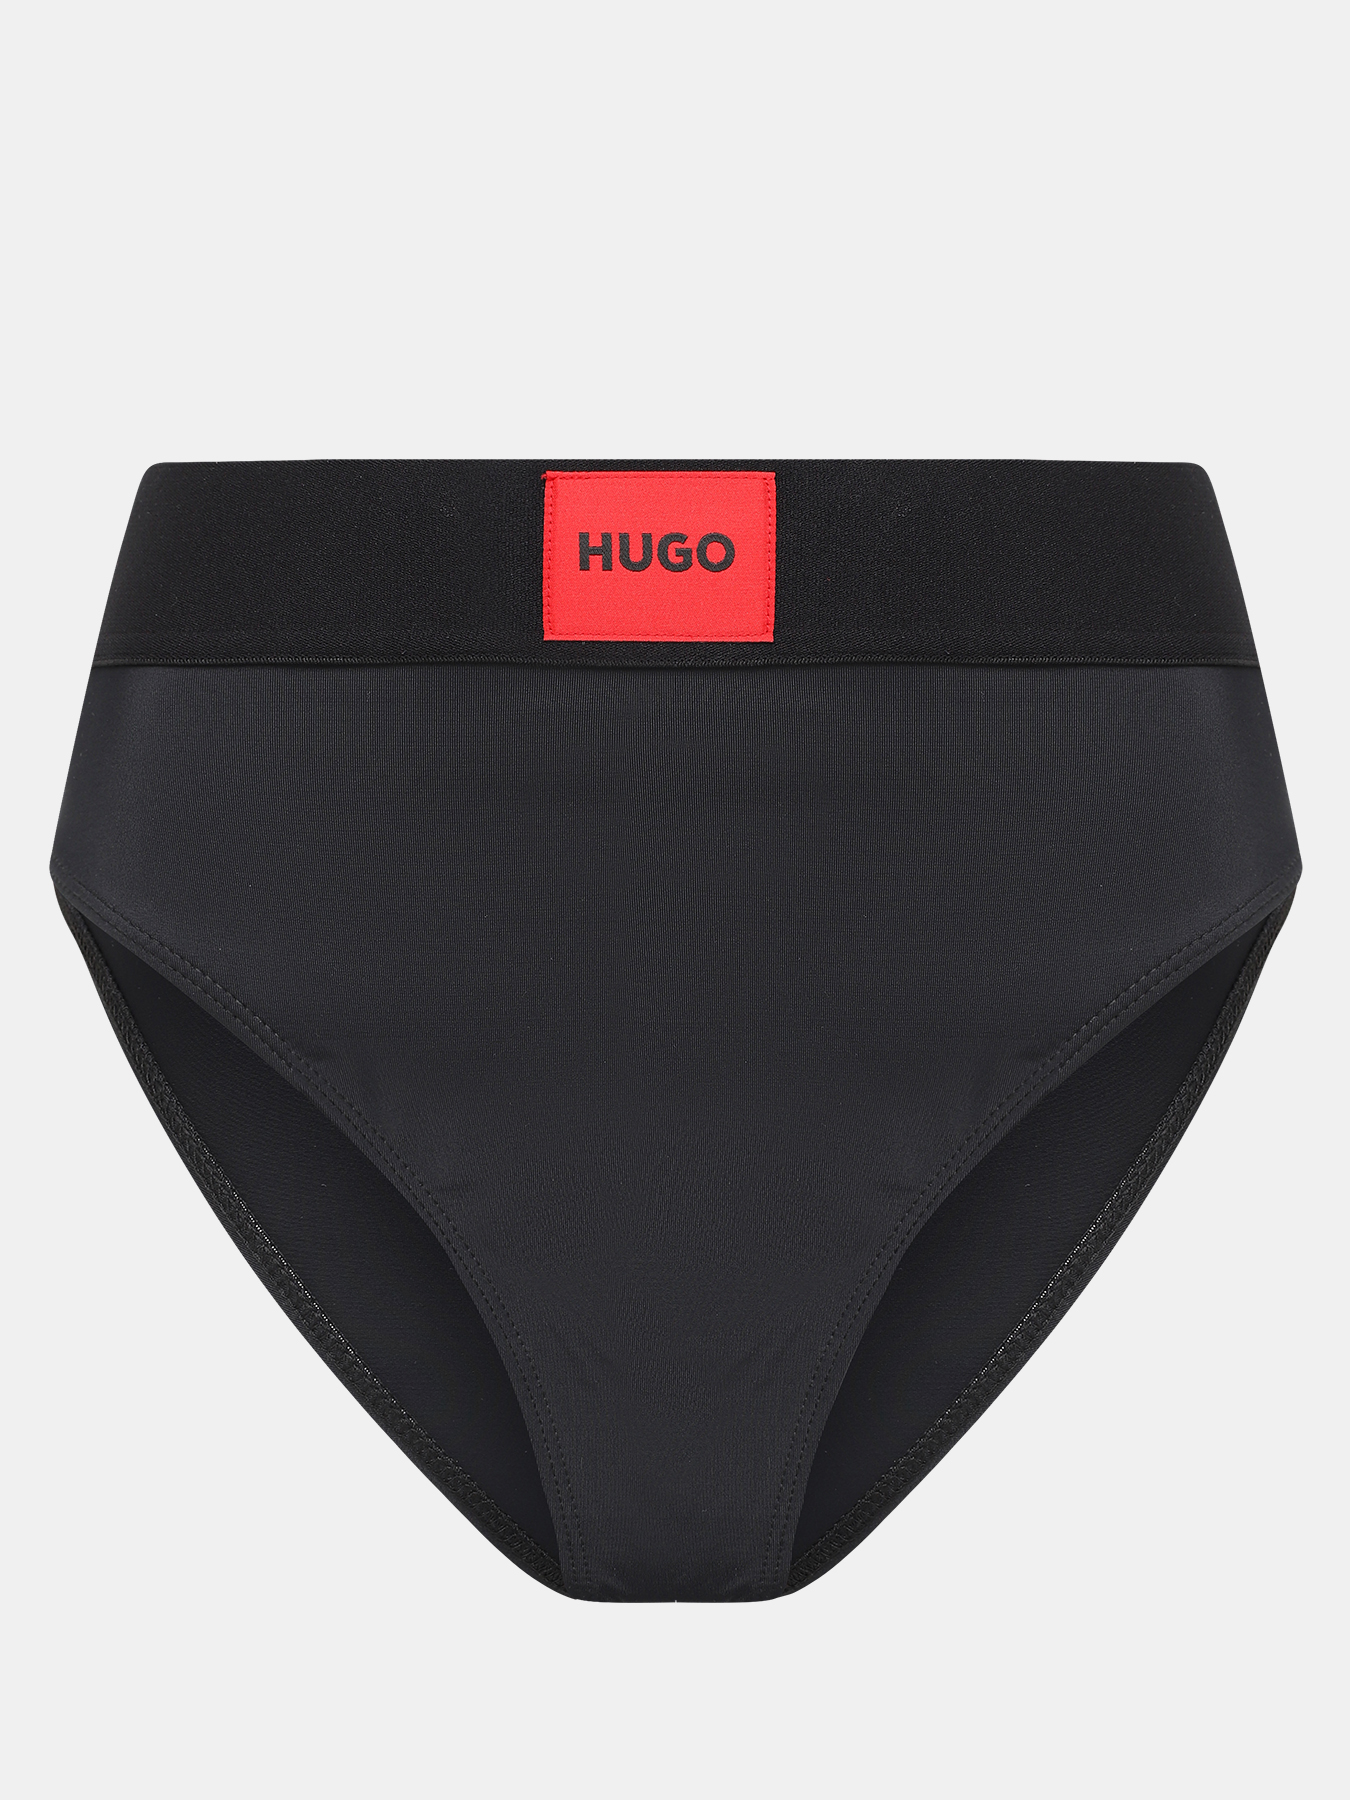 Плавки купальные High waist red label HUGO 418299-045, цвет черный, размер 48-50